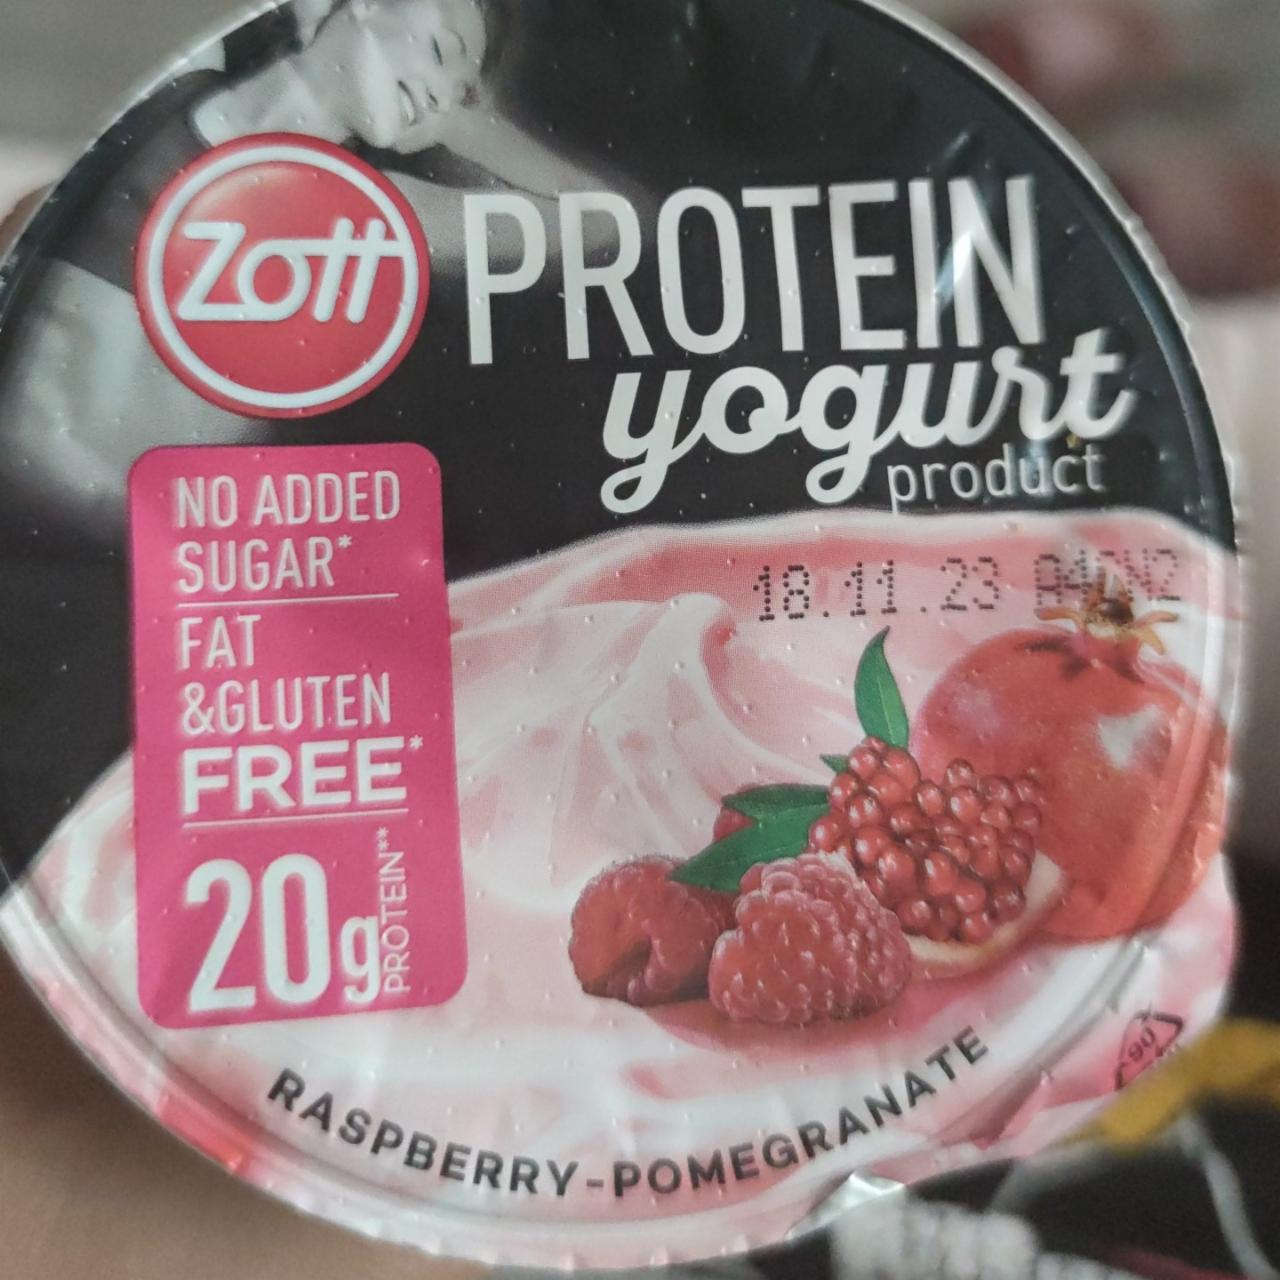 Zdjęcia - Protein yogurt raspberry pomegrante Zott